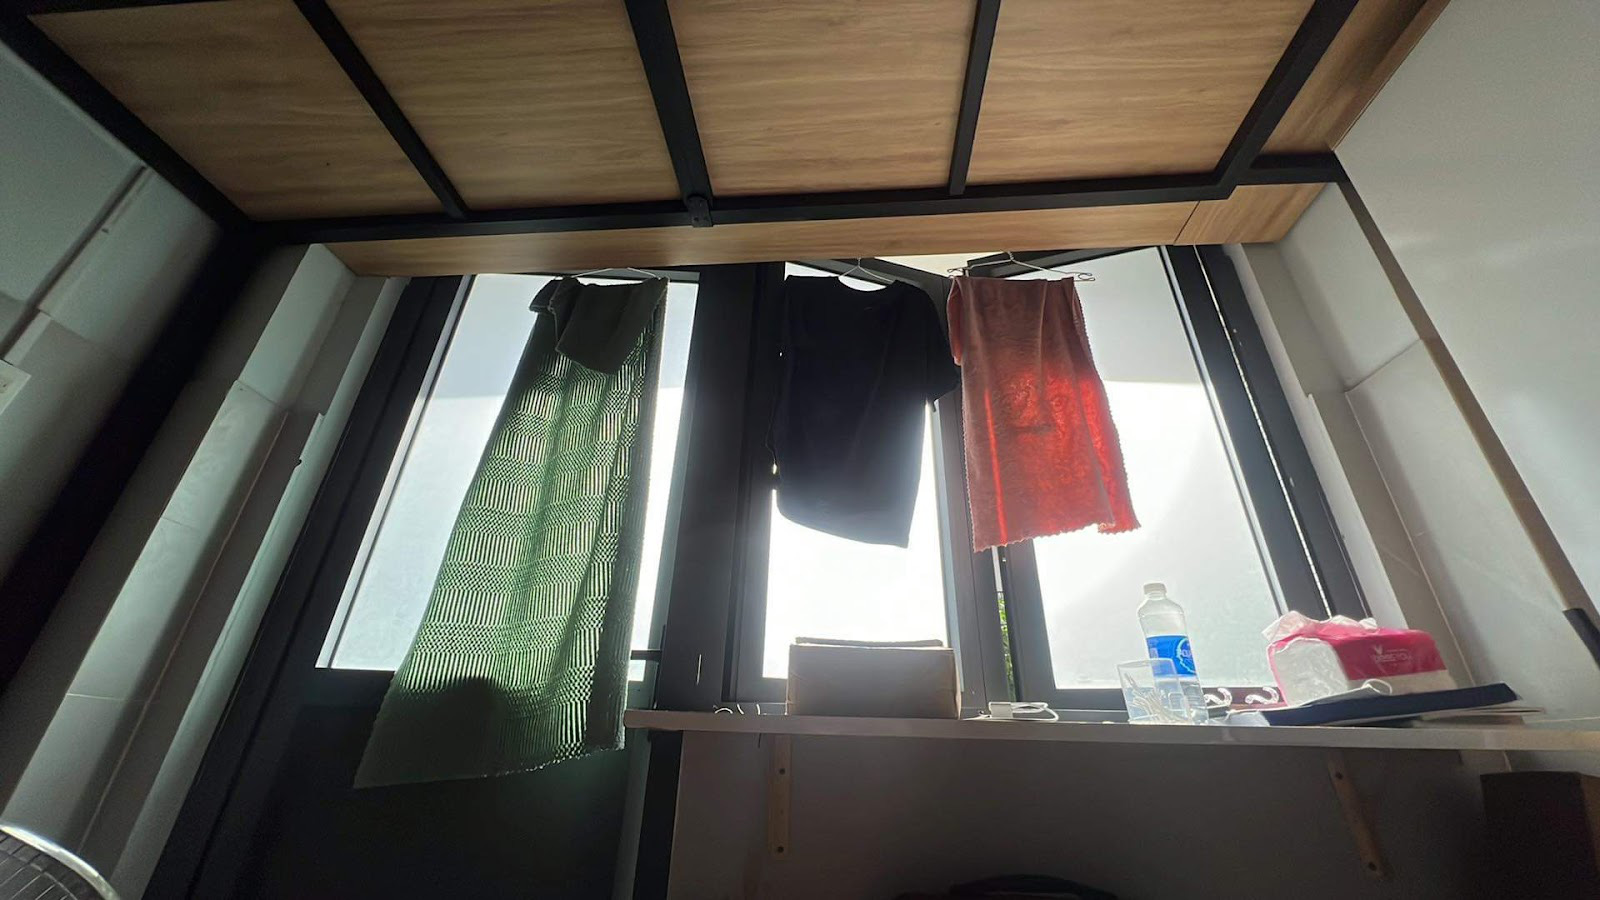 Sinh viên phơi đồ ở cửa sổ sẵn tiện che nắng - Ảnh: KHÁNH BÙI